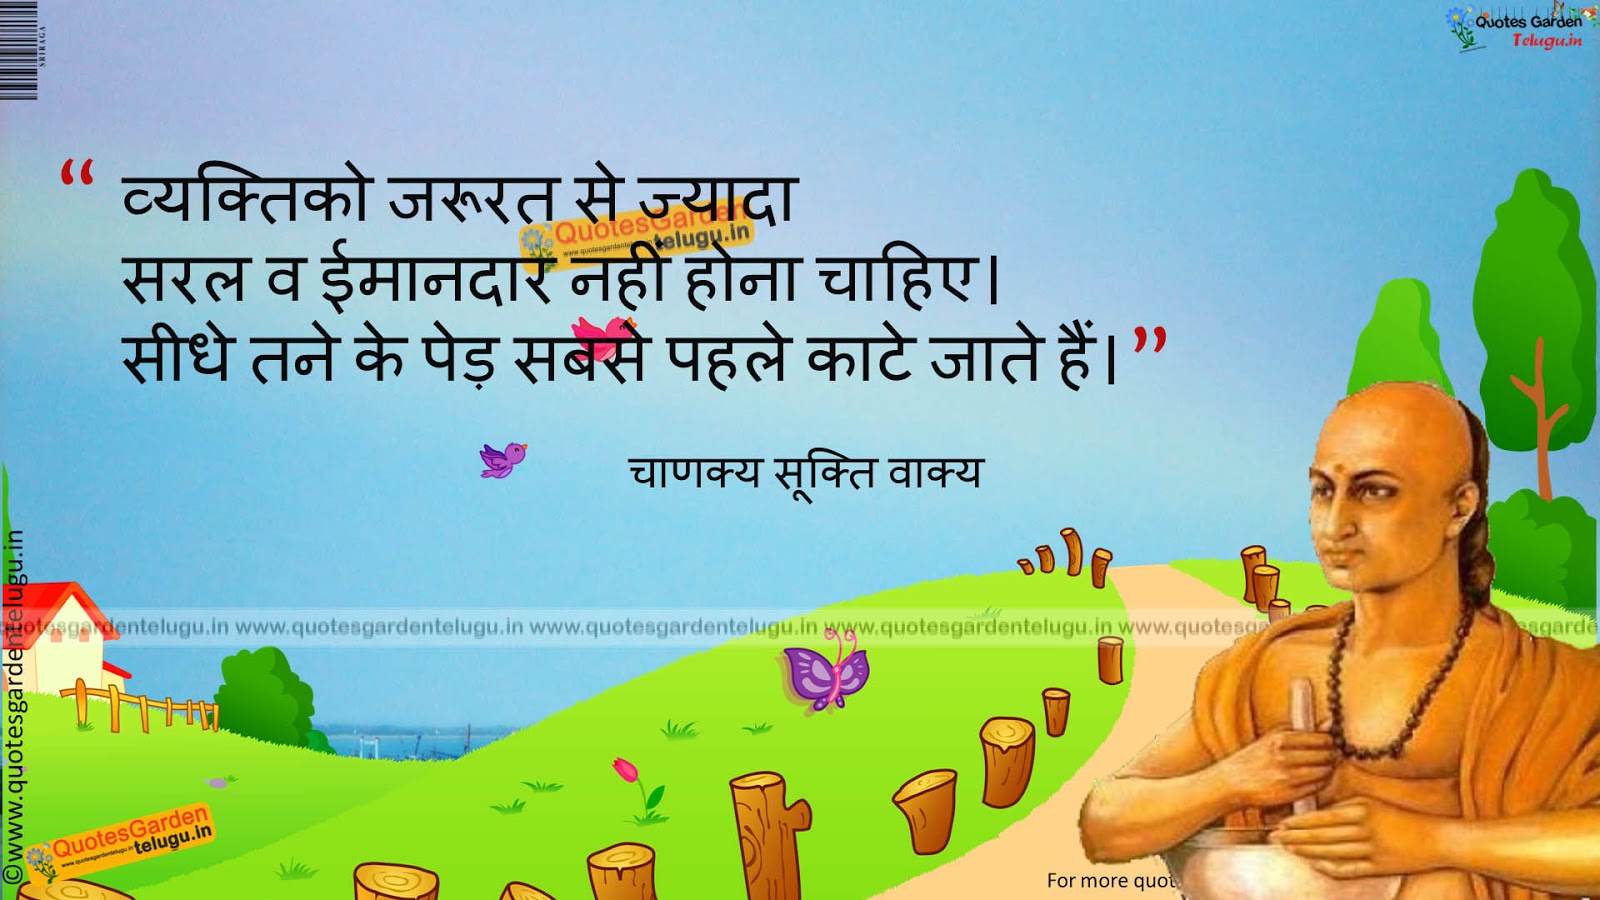 Chanakya neeti sutra inspiring hindi quotes | QUOTES GARDEN TELUGU | Telugu  Quotes | English Quotes | Hindi Quotes |